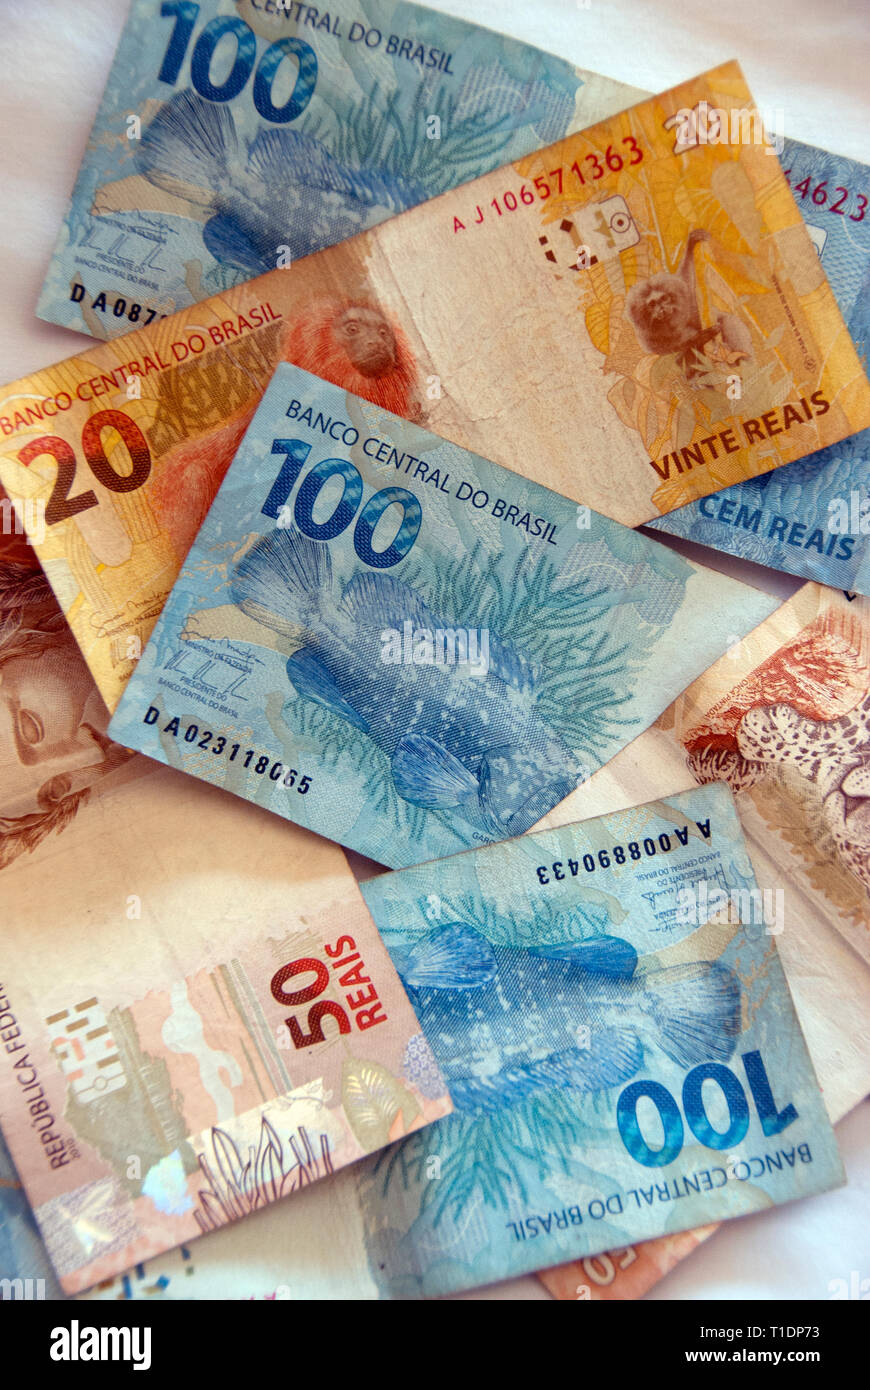 Los billetes (papel moneda brasileña) en 2015 Foto de stock